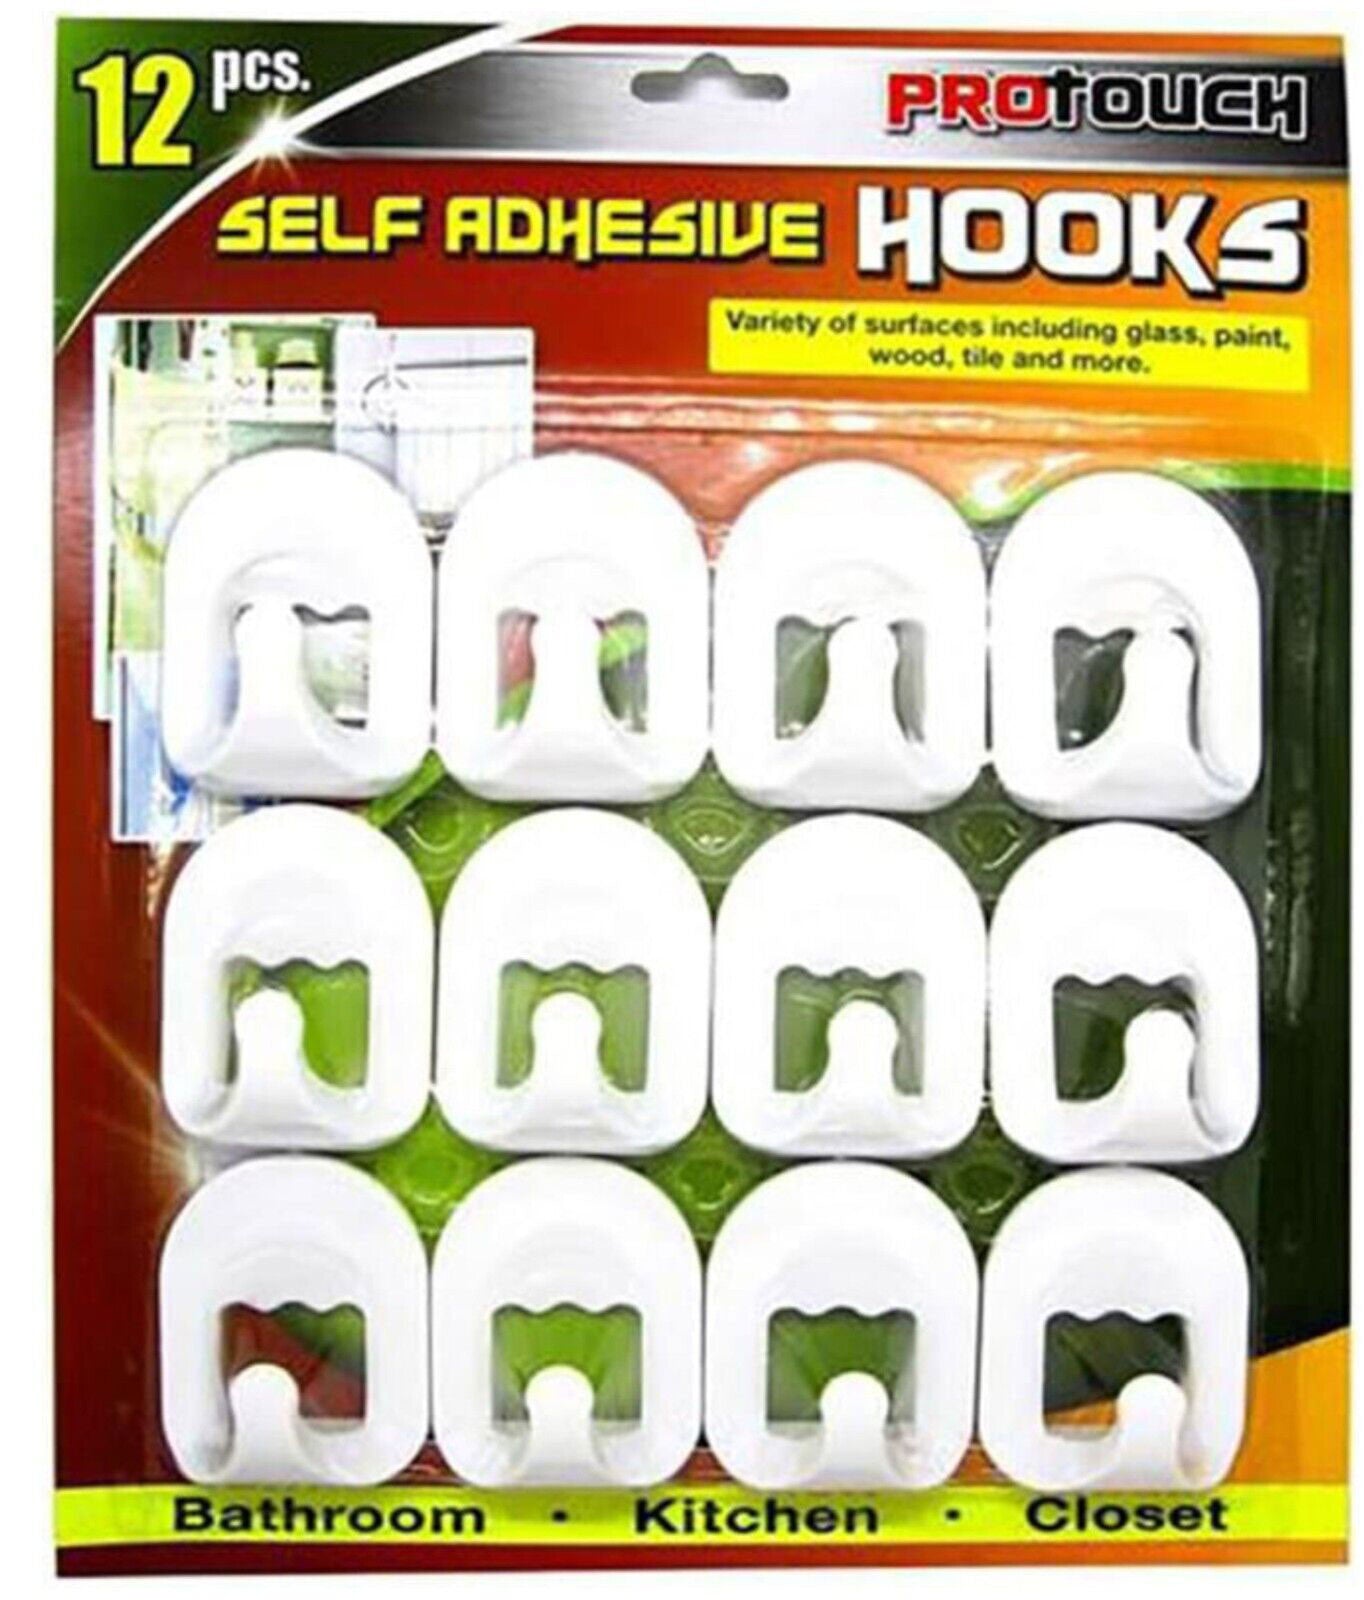 Self Adhesive Hooks